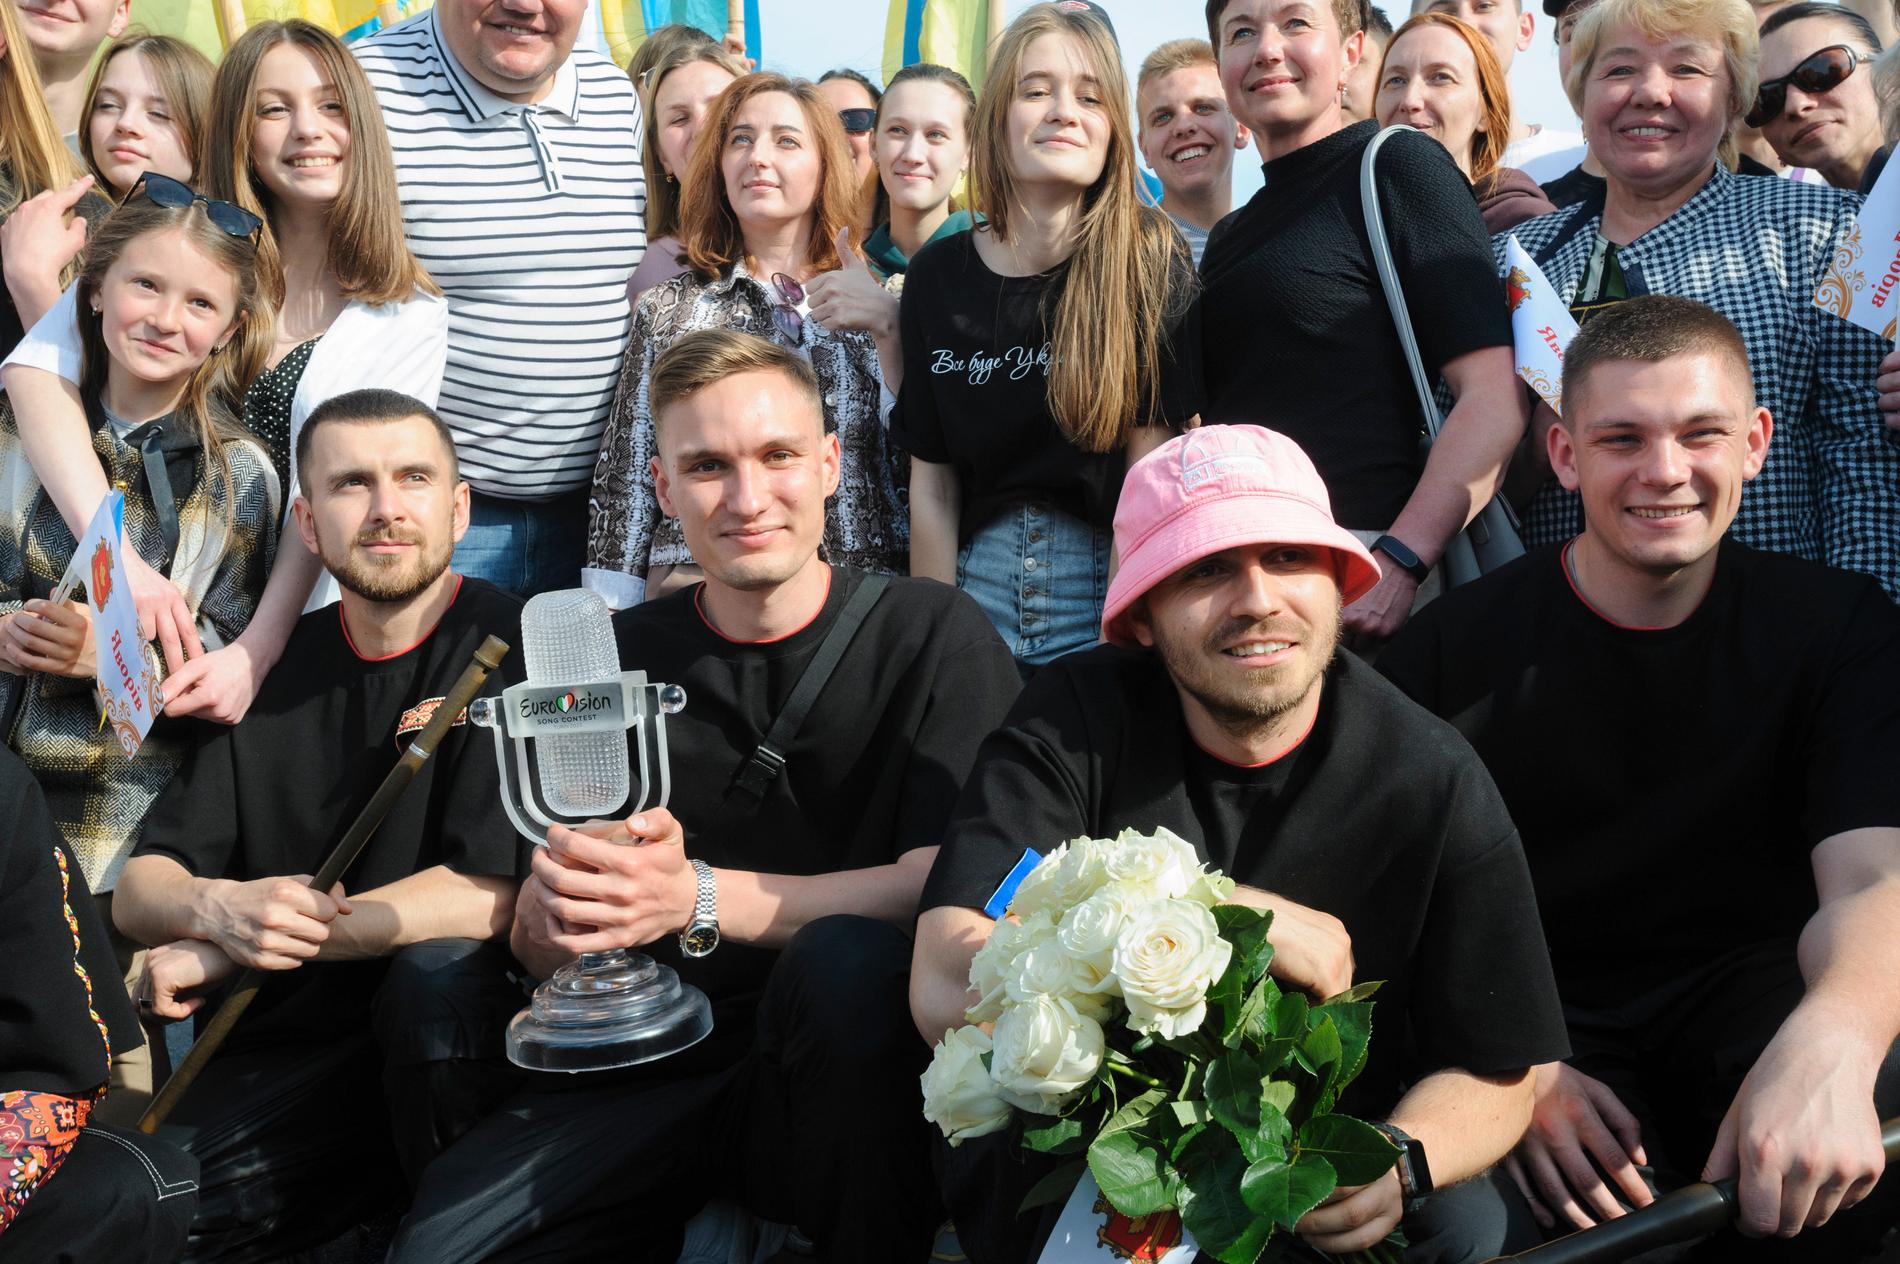 Oleh Psiuk i sin rosa mössa och resten av medlemmarna i Kalush Orchestra poserar med fans. Bandet auktionerat ut statyetten och mössan. Arkivbild.